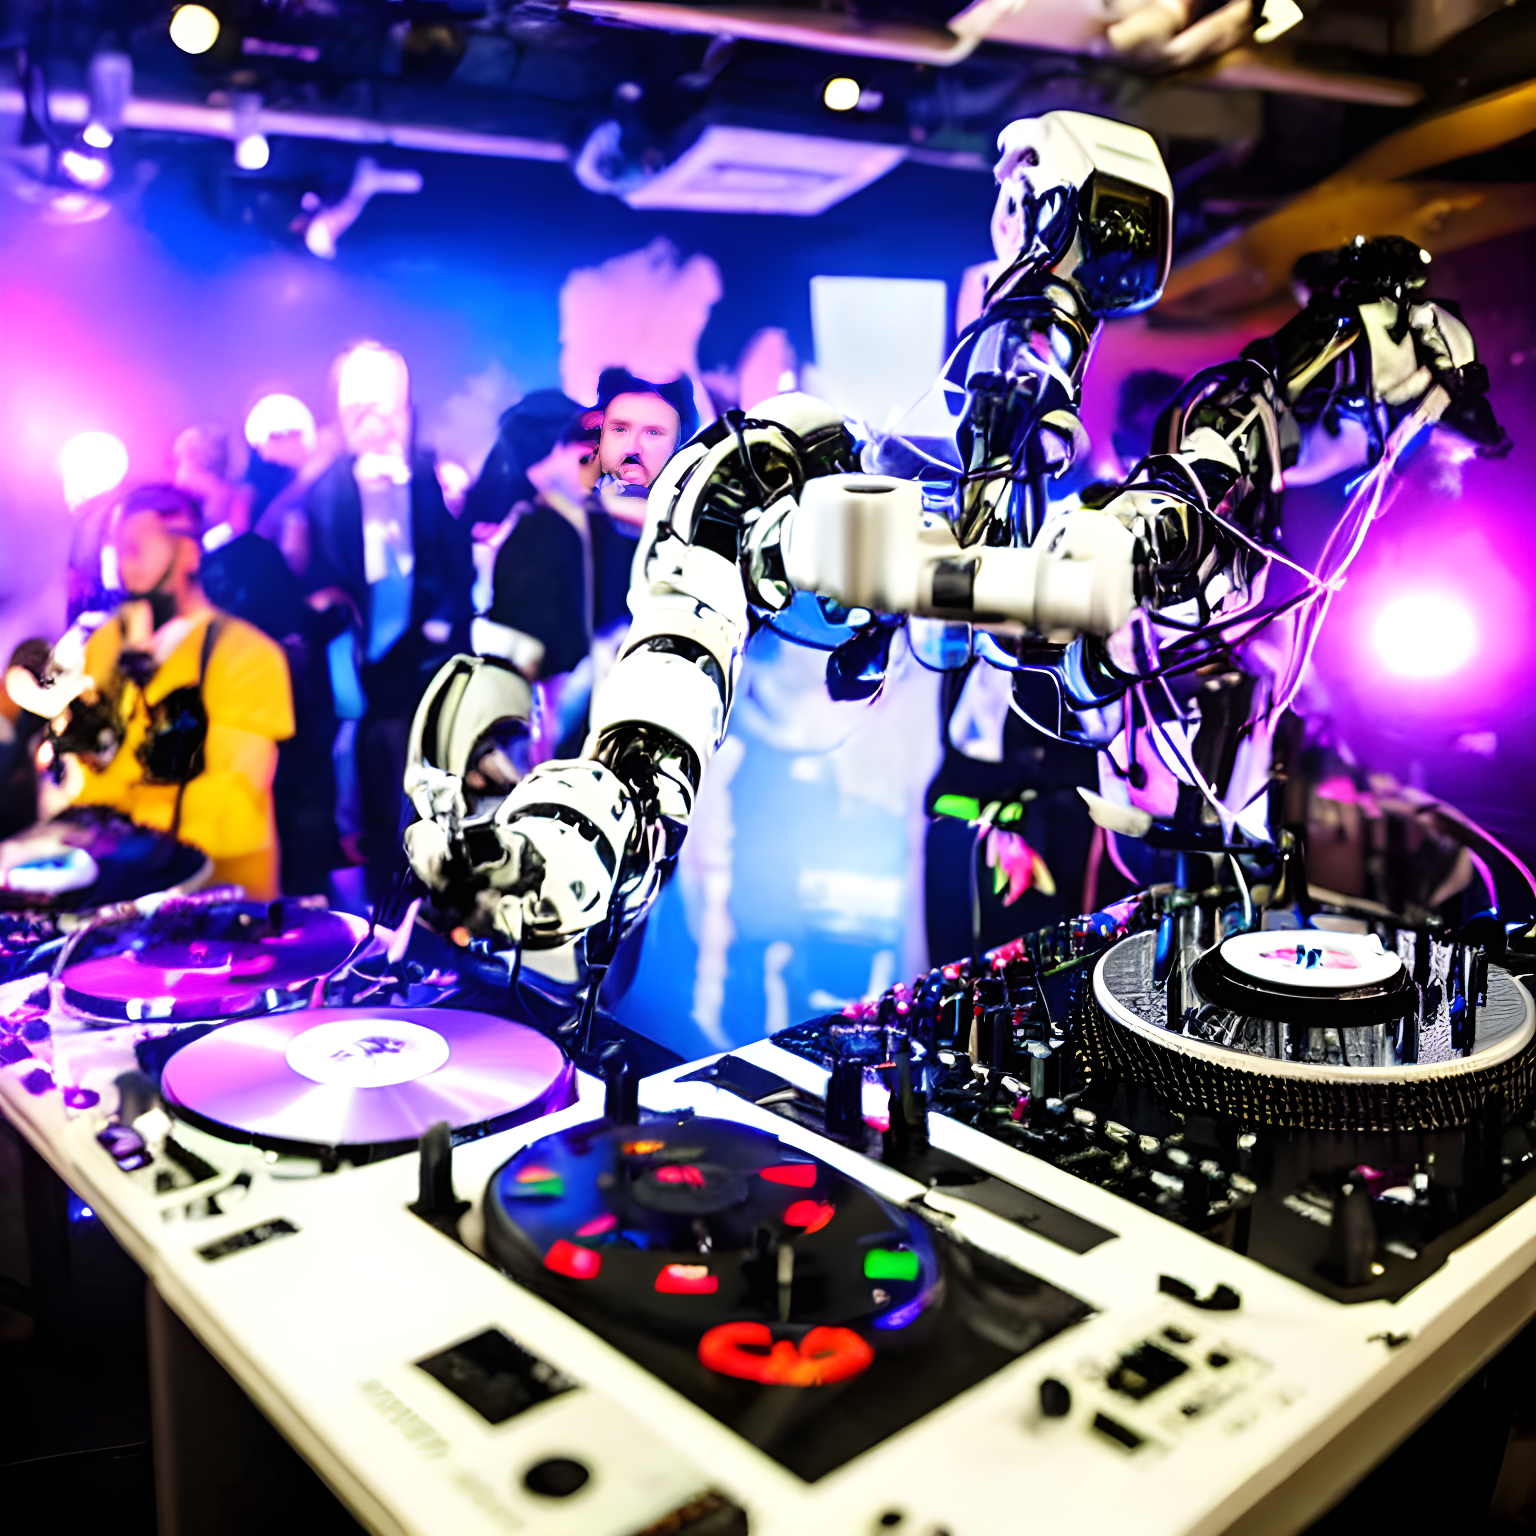 A robot djing at a party